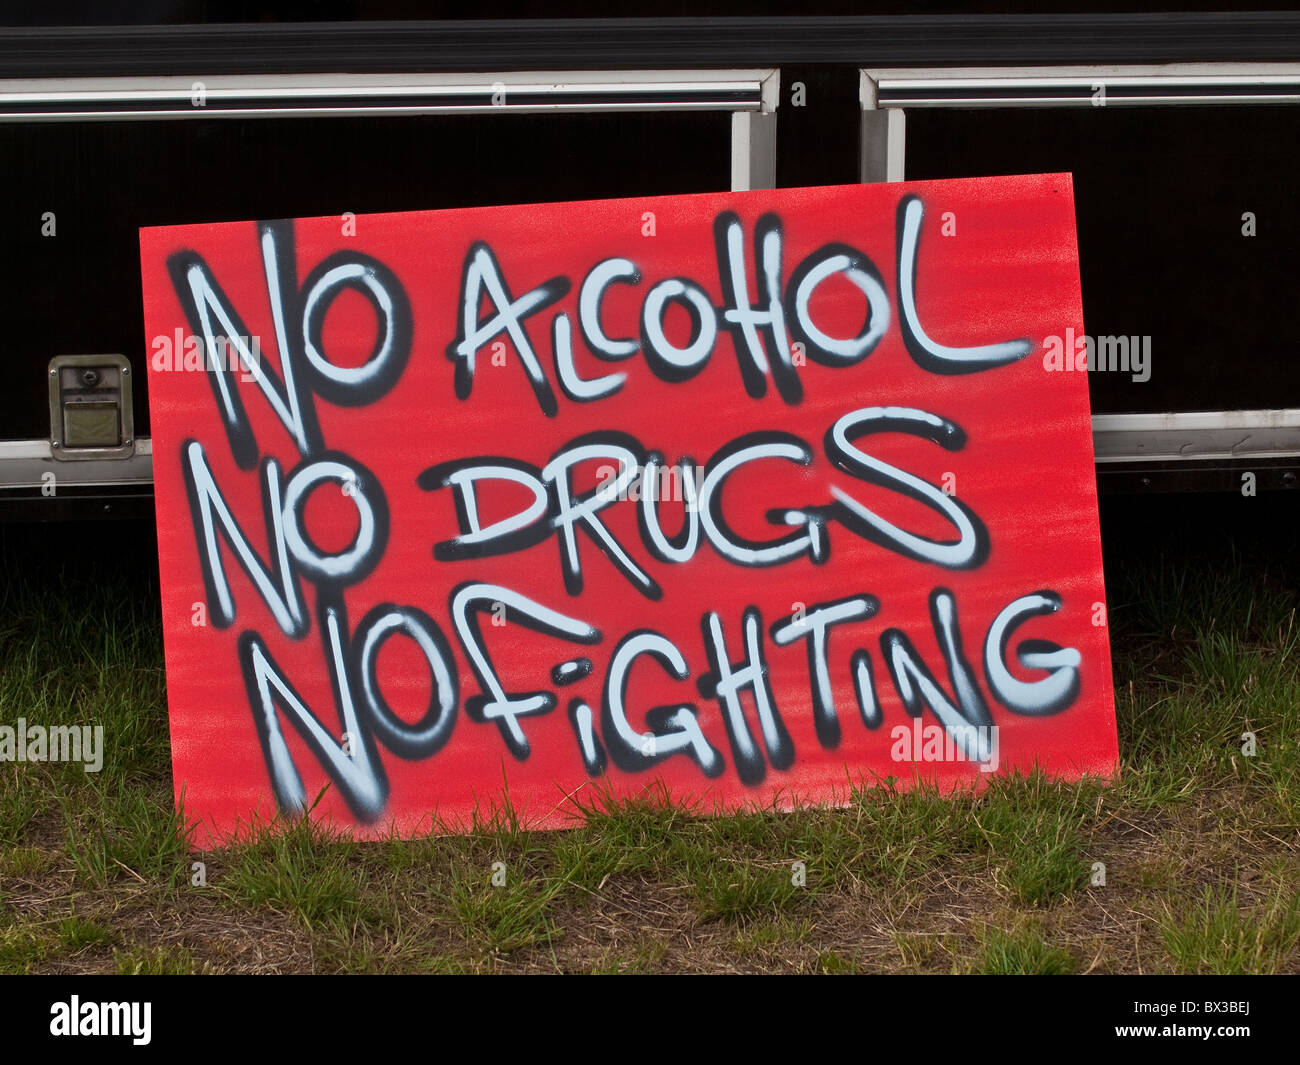 Firmar en el festival diciendo "No alcohol, no drogas, no luchando" Foto de stock